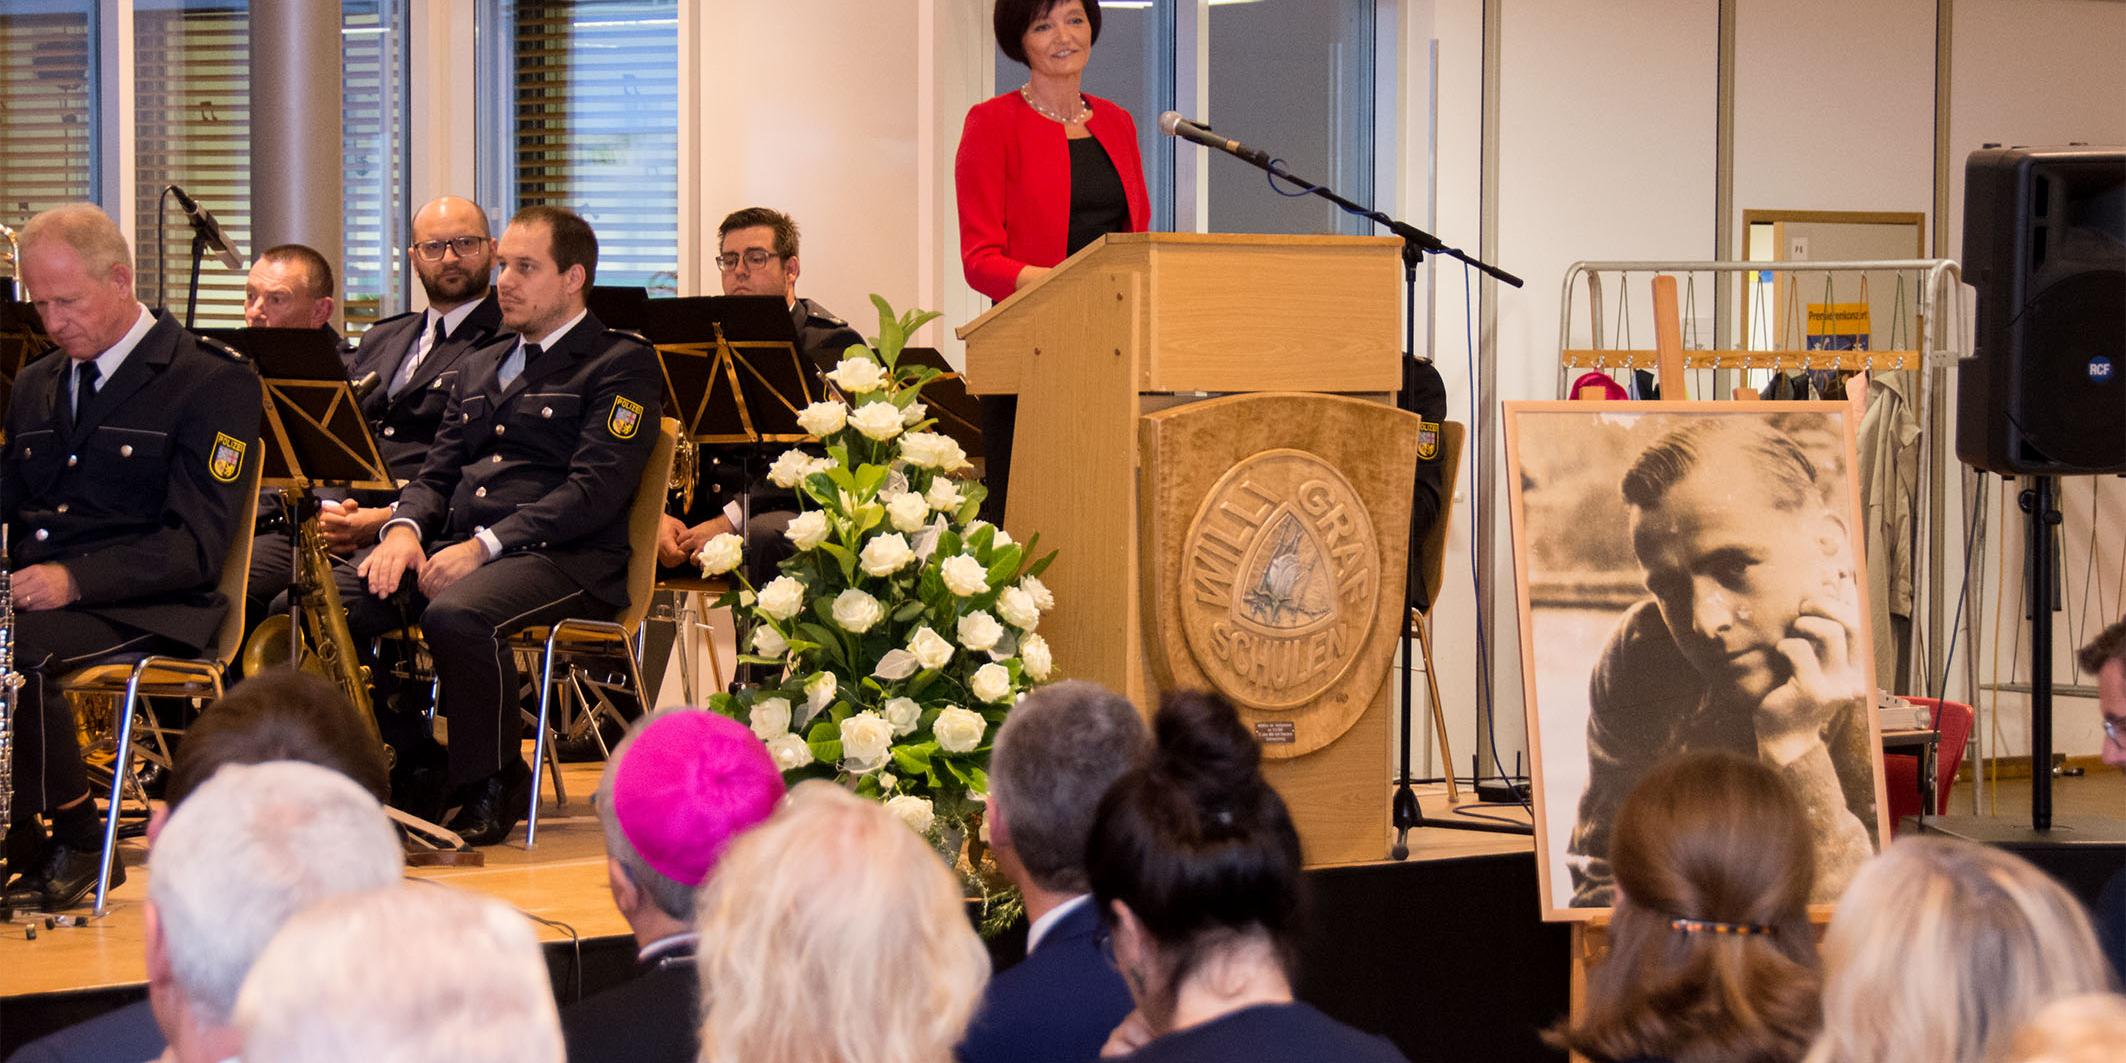 Katja Göbel, Leiterin des Katholischen Büros im Saarland begrüßte die zahlreichen Gäste zum Willi-Graf-Empfang 2018.